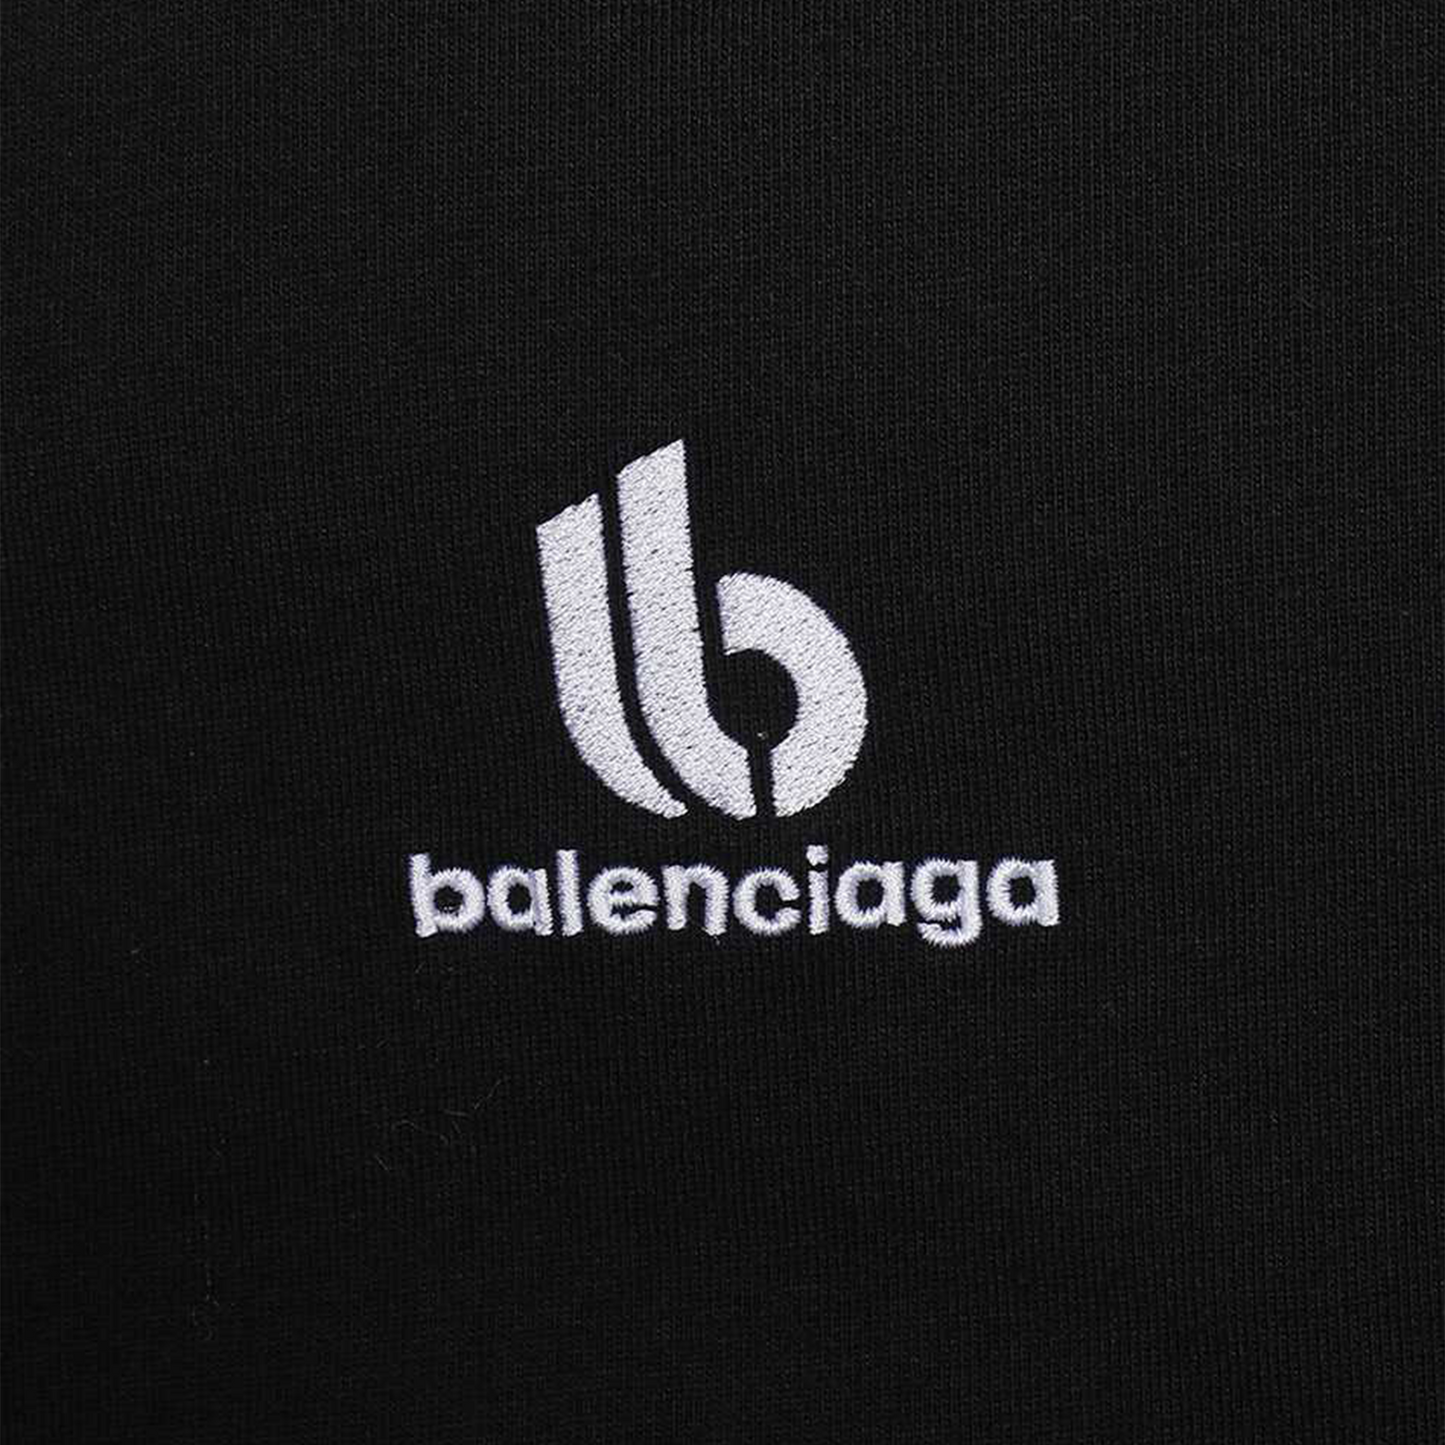 Balenciaga Embroidered Double B Logo Tee Black